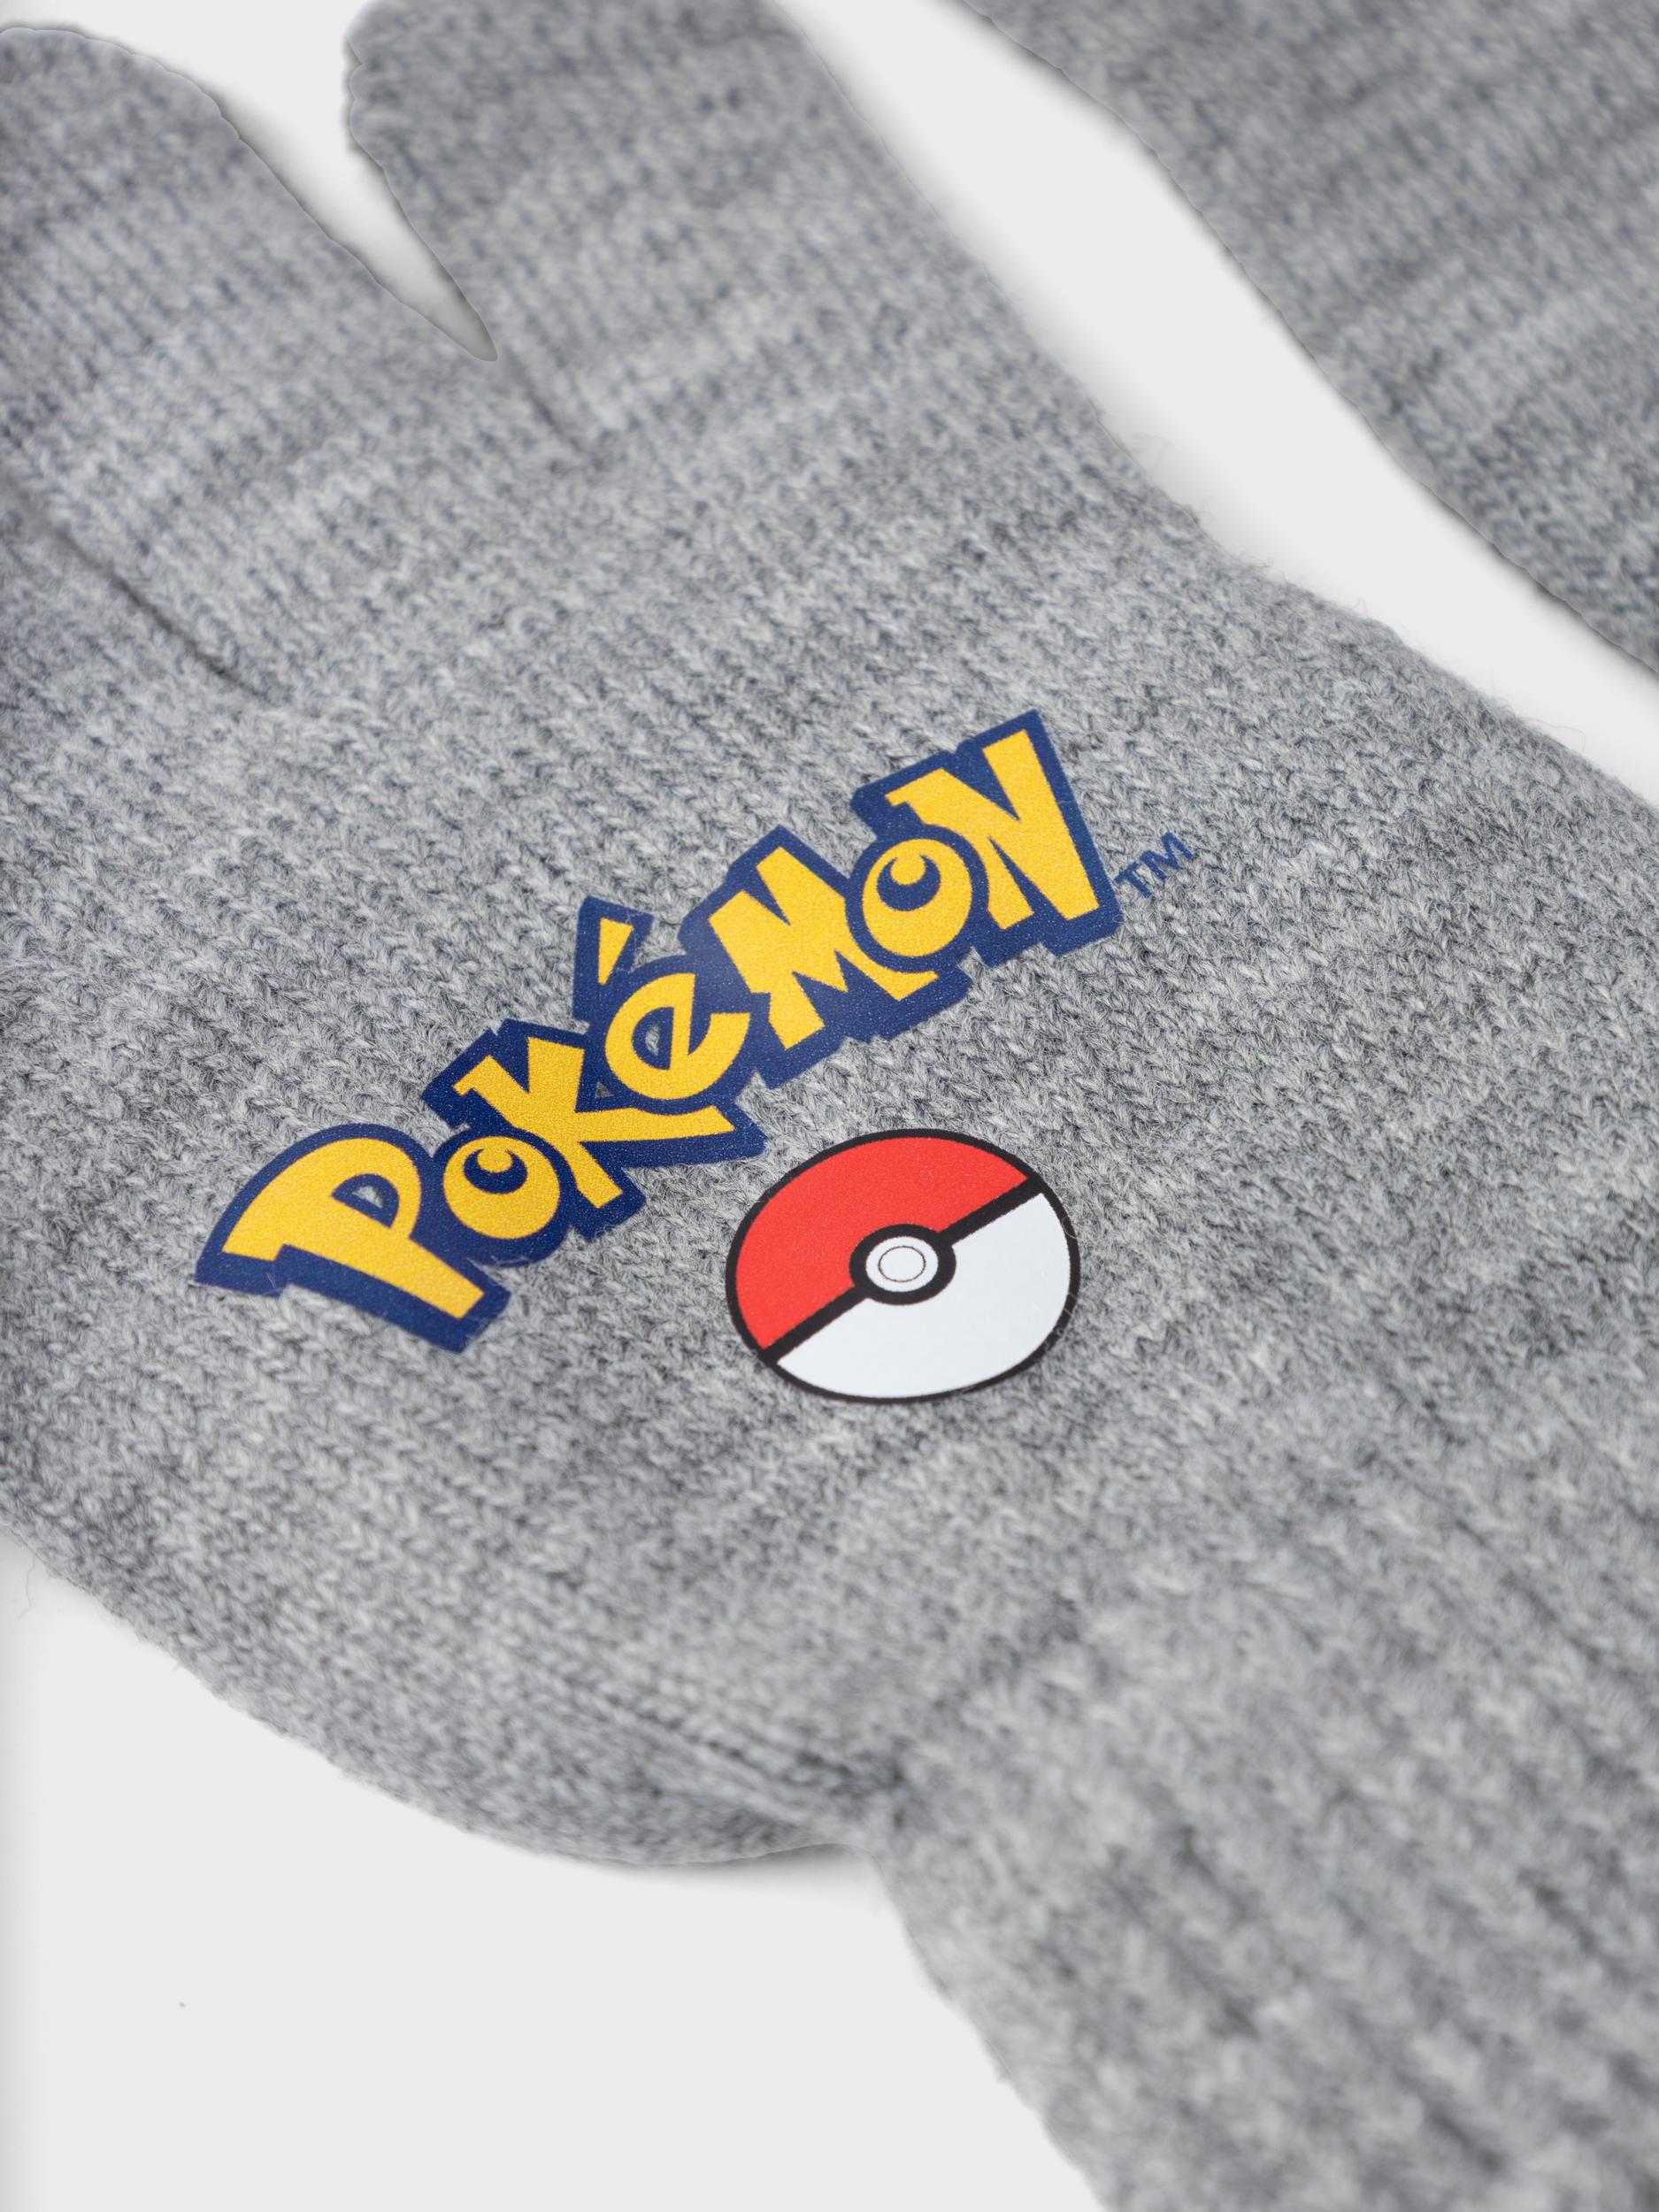 Pokémon Gloves - Grey